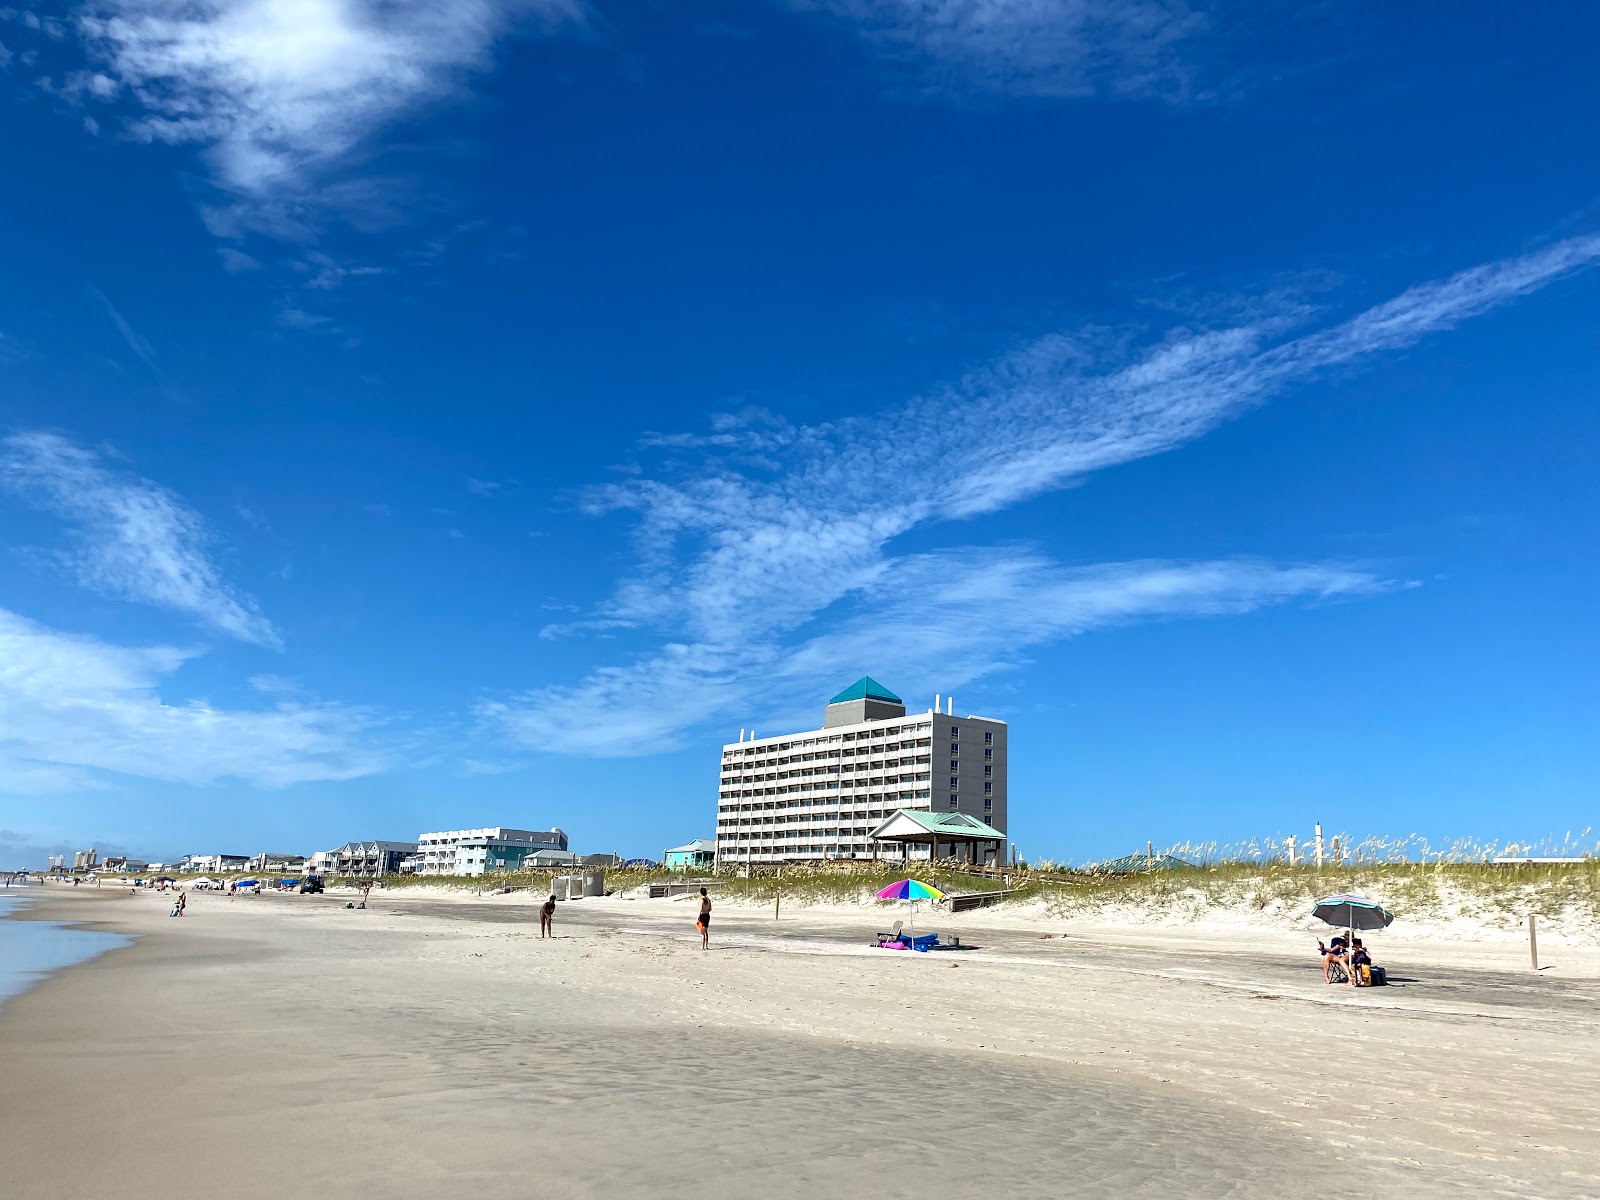 Zdjęcie Carolina beach - popularne miejsce wśród znawców relaksu